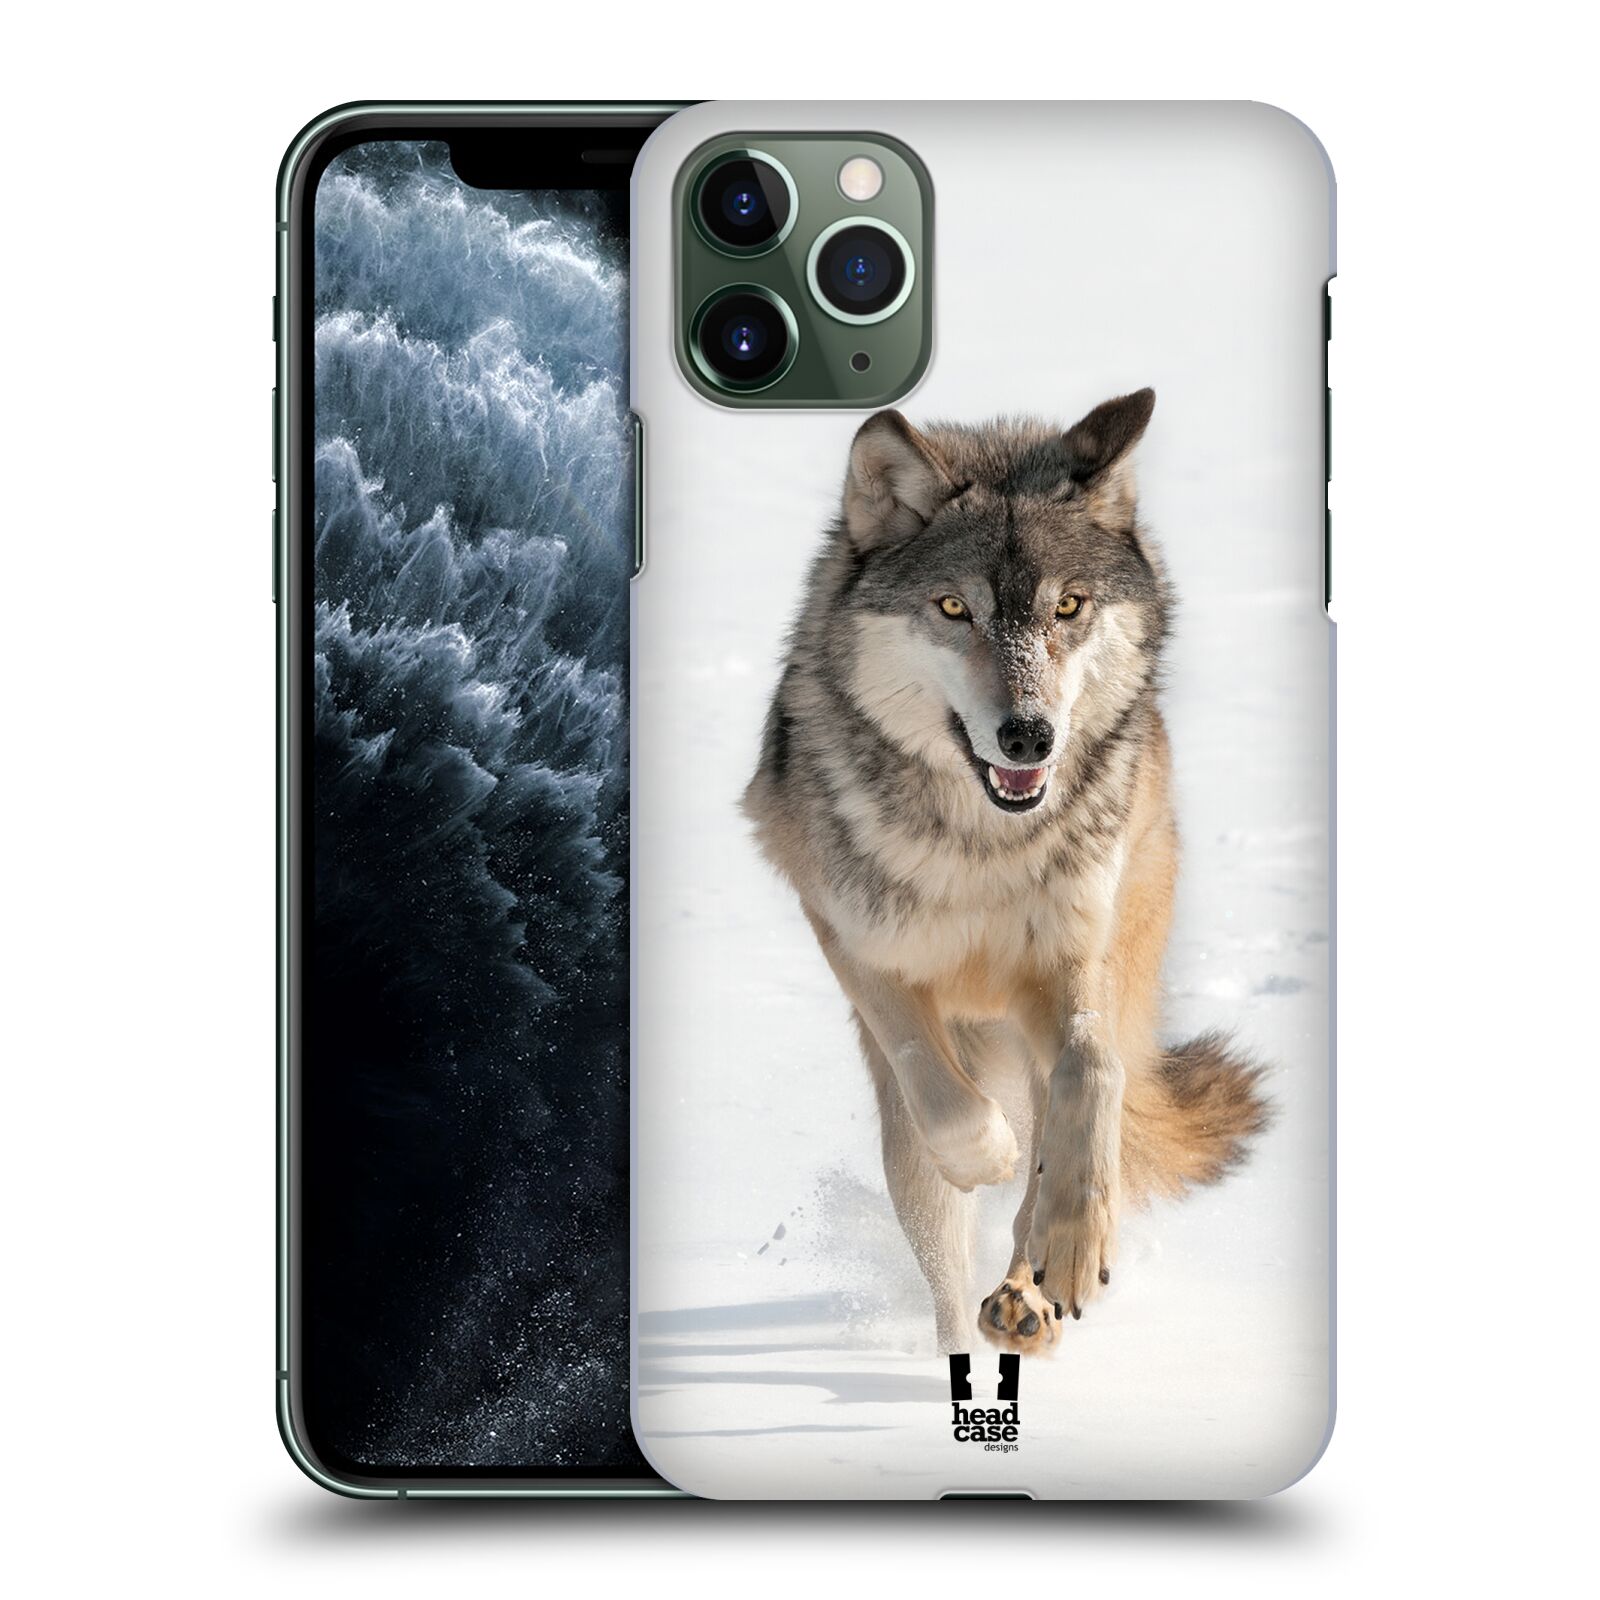 Pouzdro na mobil Apple Iphone 11 PRO MAX - HEAD CASE - vzor Divočina, Divoký život a zvířata foto BĚŽÍCÍ VLK